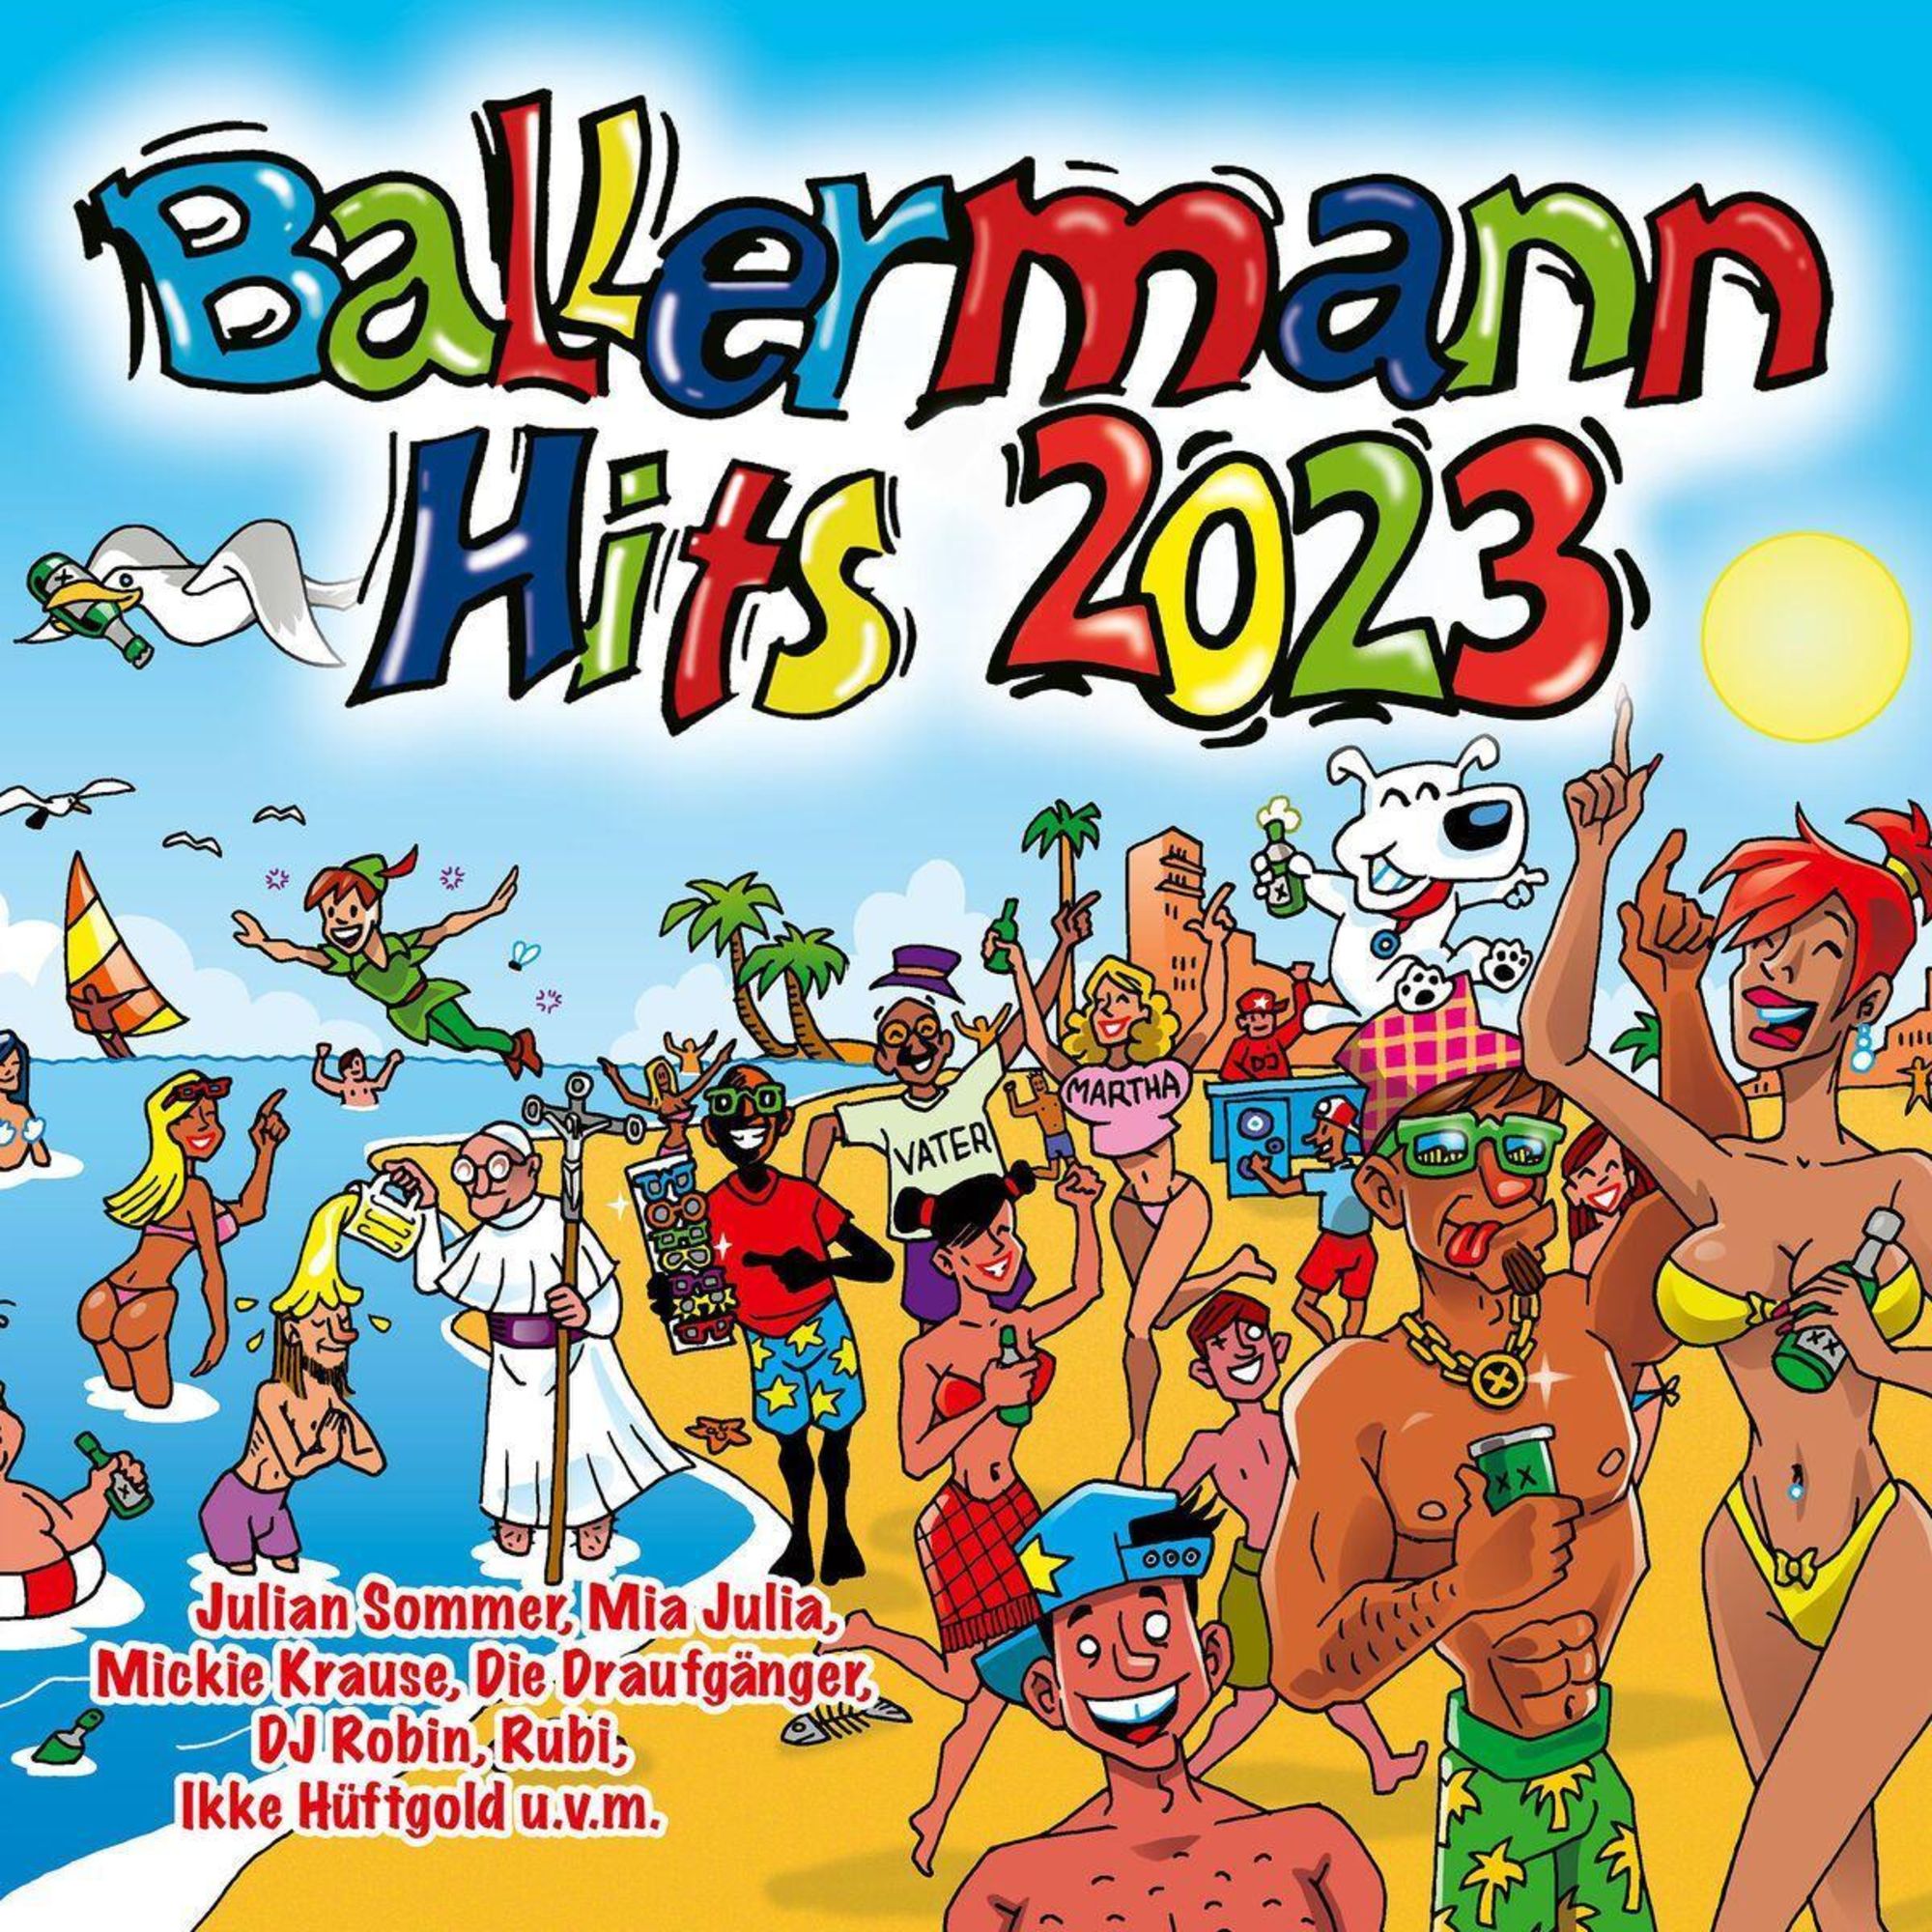 'Ballermann Hits 2023' von 'Various' auf 'CD' Musik